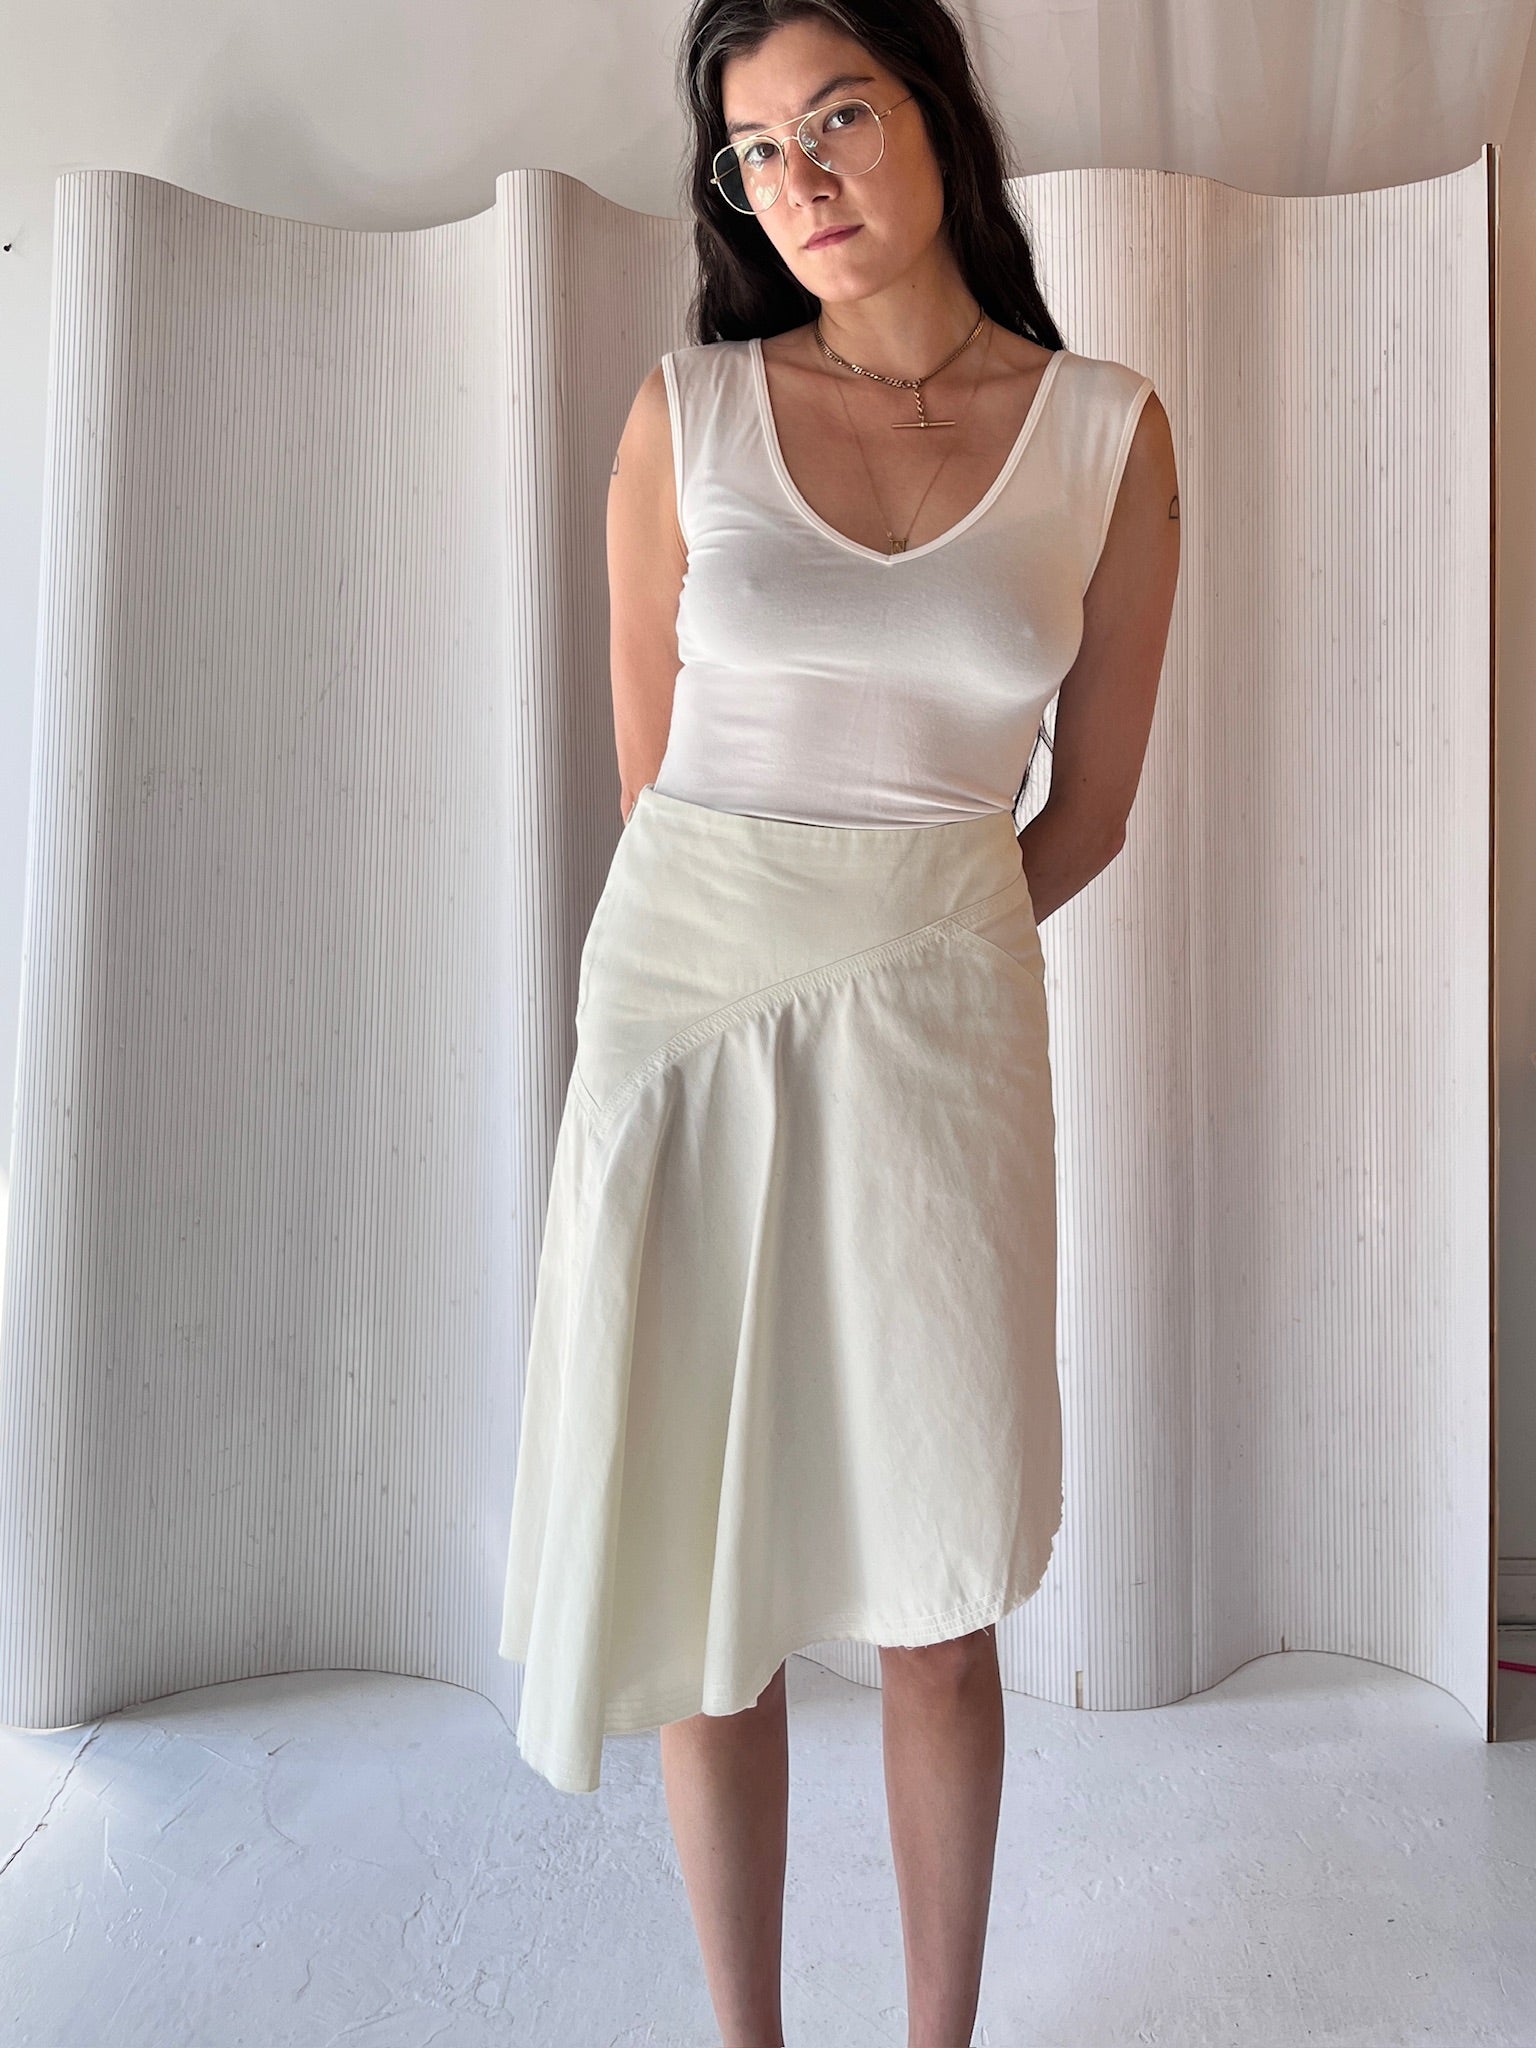 Faithfull pale lime skirt